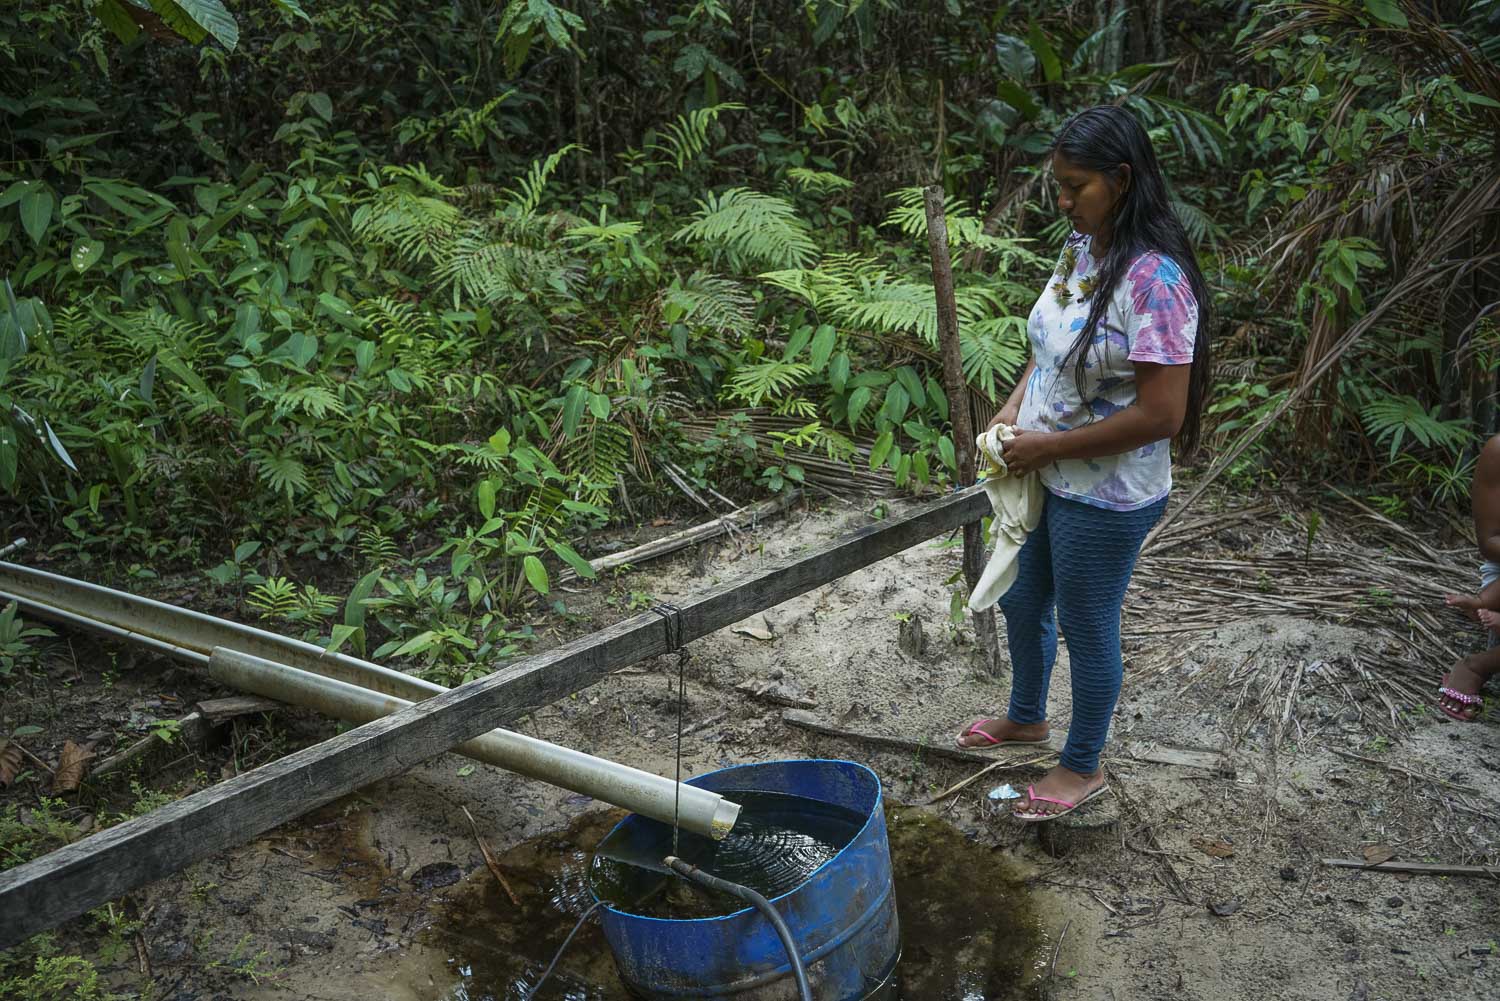 Moradora da aldeia de Branquinho, em Manaus, observa um dos únicos poços ainda com água potável nas redondezas